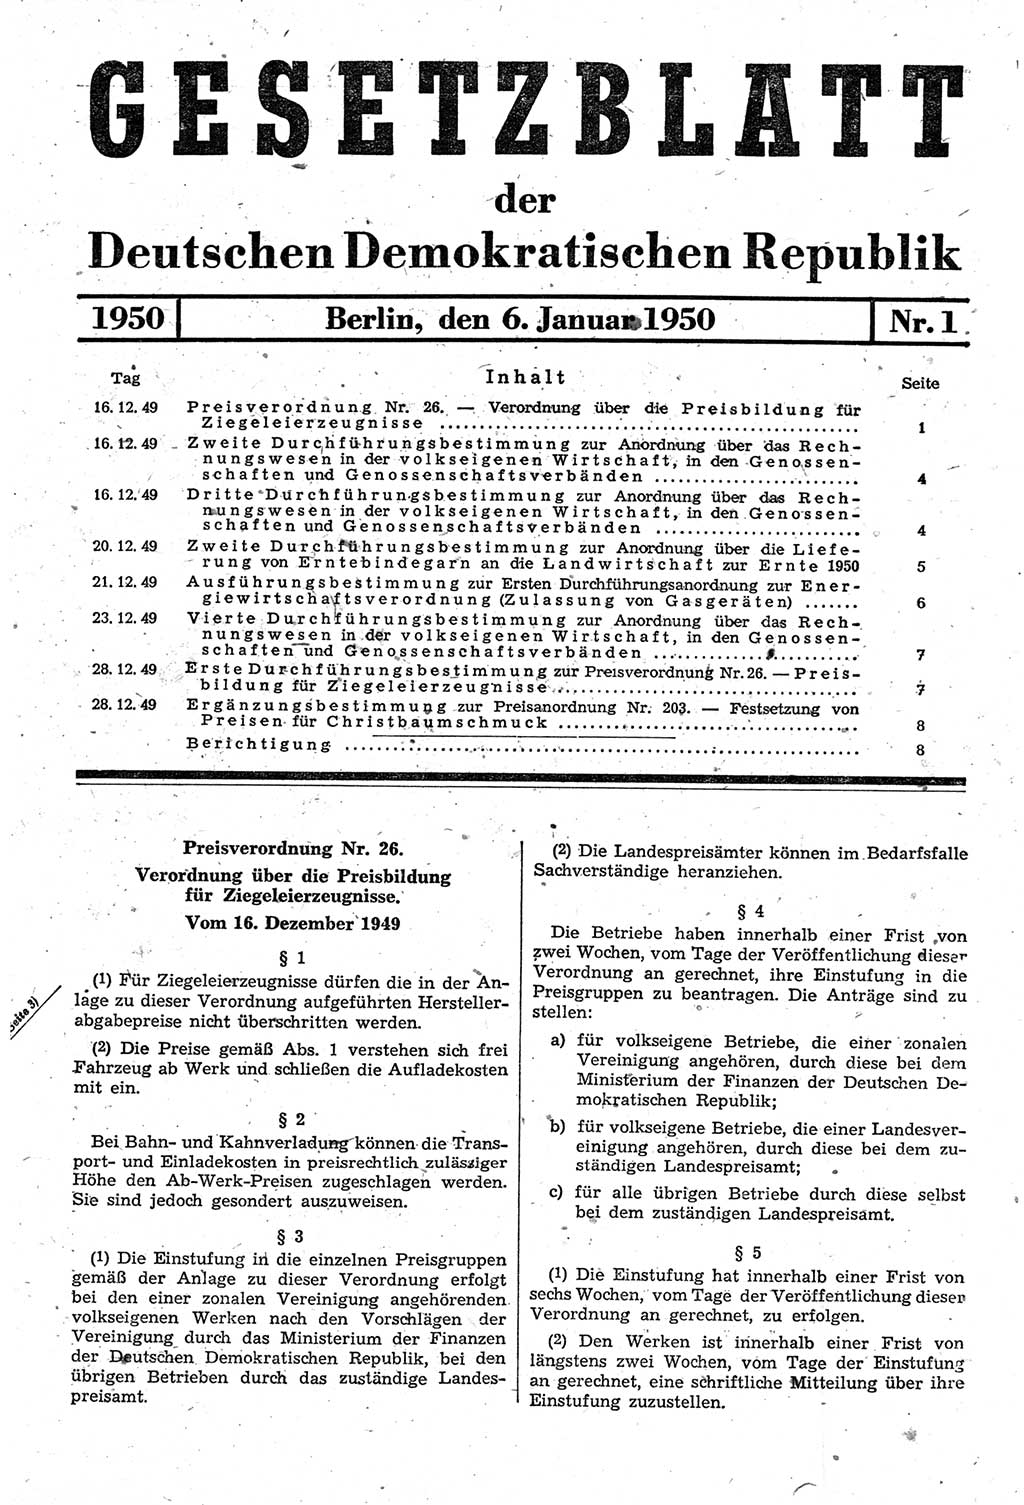 Gesetzblatt (GBl.) der Deutschen Demokratischen Republik (DDR) 1950, Seite 1 (GBl. DDR 1950, S. 1)